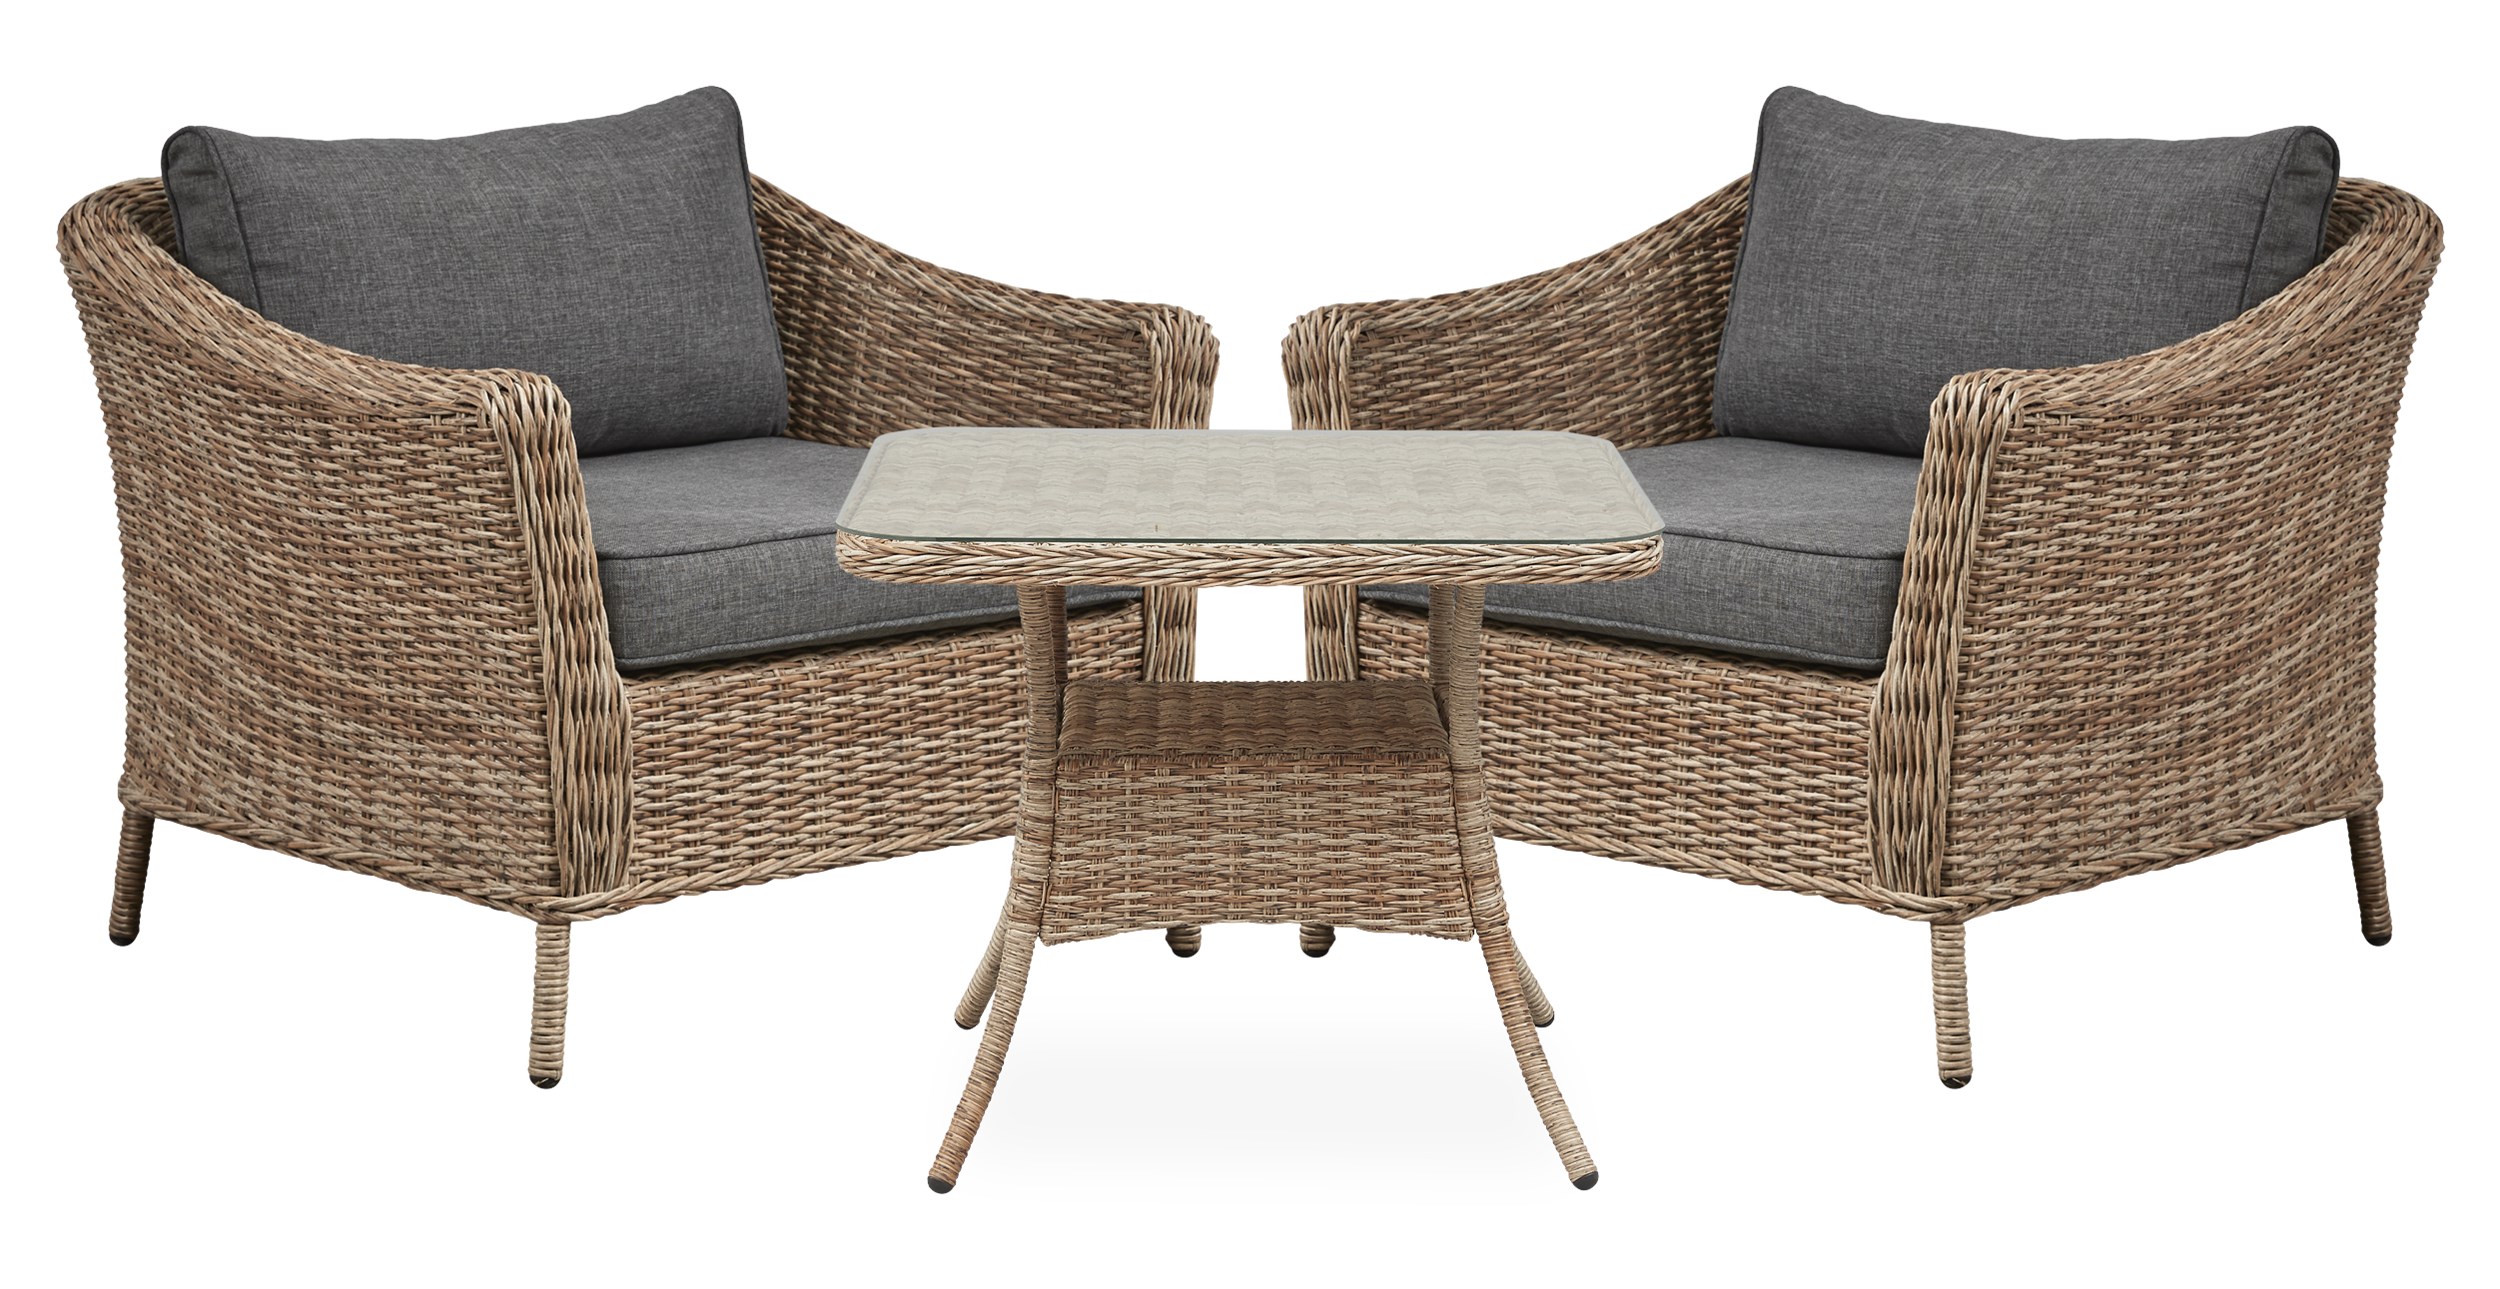 Henley Loungeset med 2 stolar natur/grå + 1 bord natur/glas